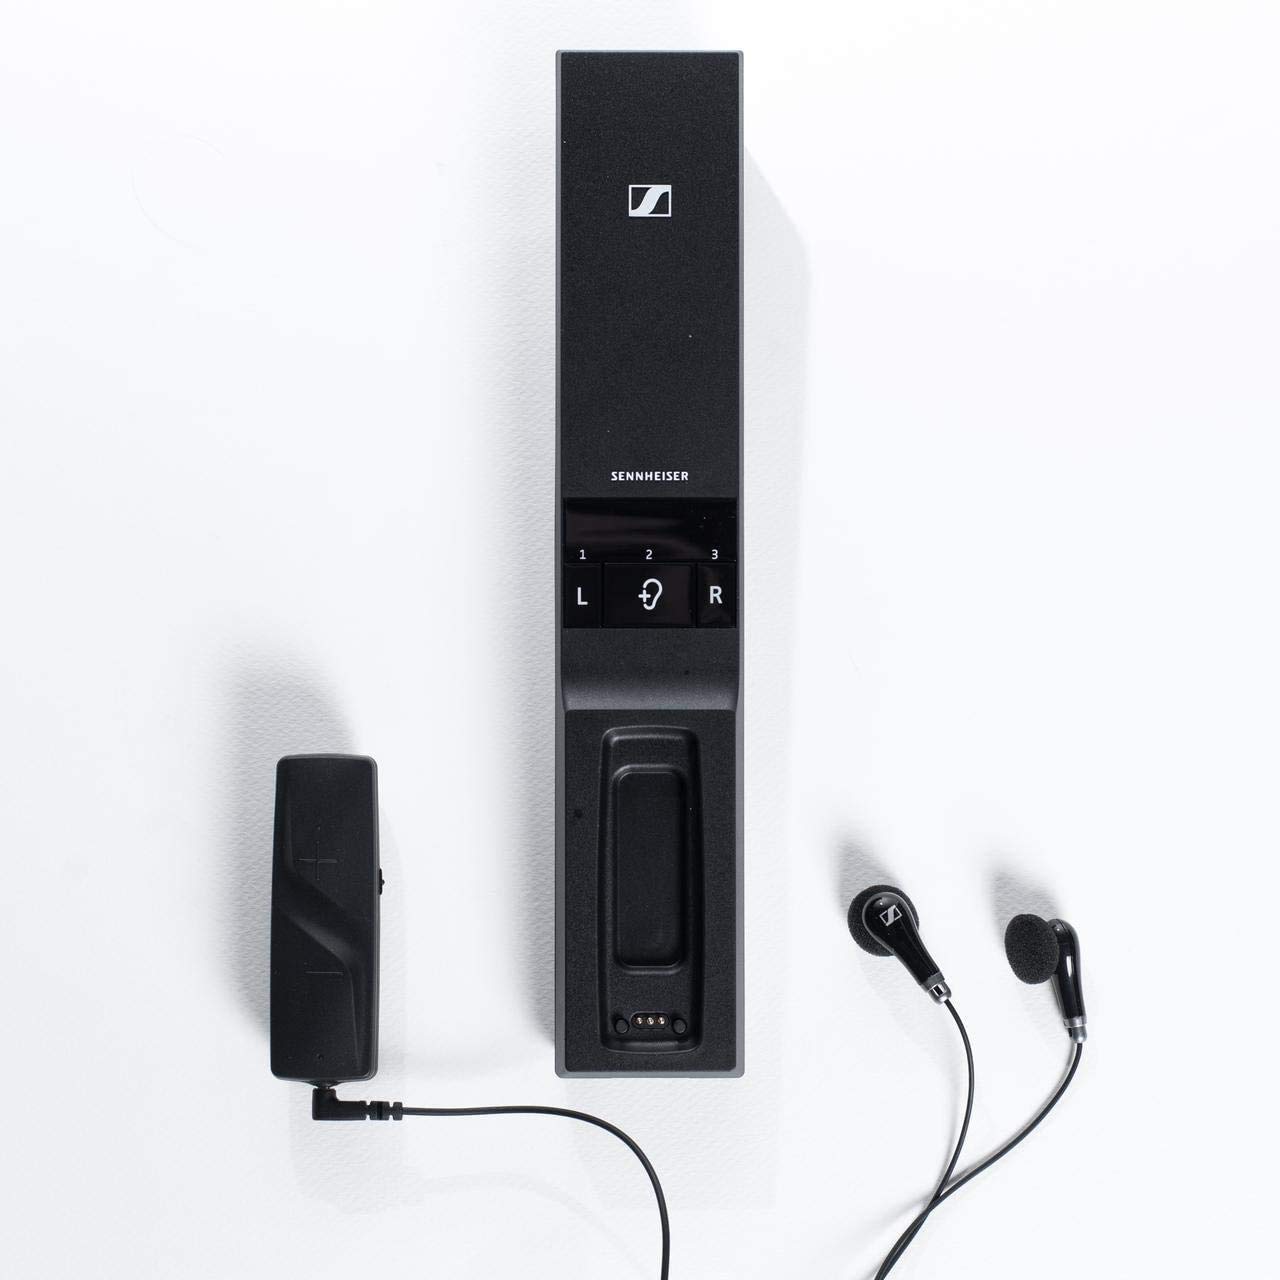 Sennheiser Consumer Audio Casque numérique sans fil Flex 5000 pour écouter la télévision - Noir